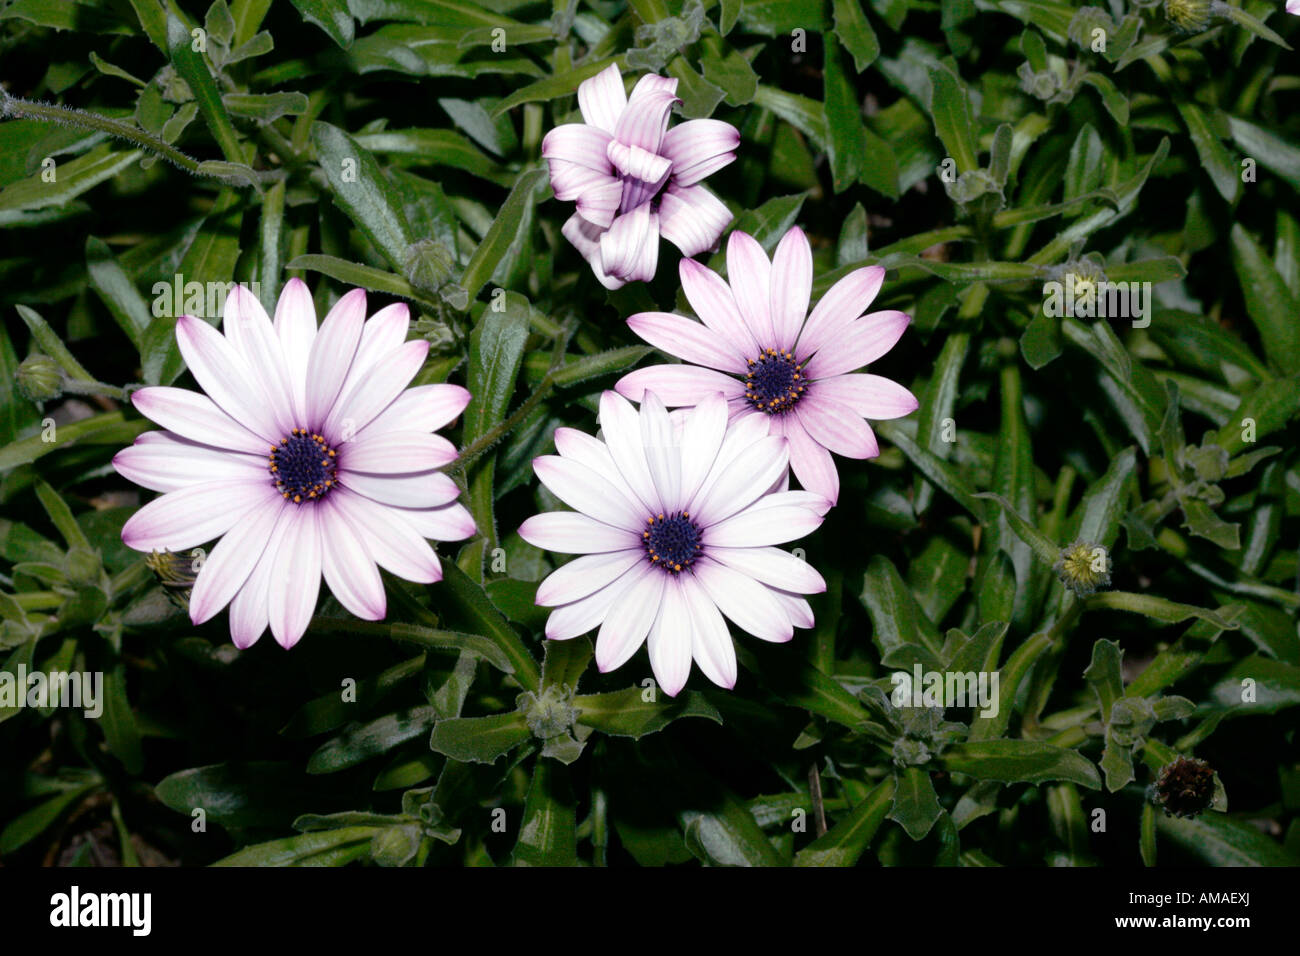 Regen Sie Daisy Flower-Mitglied der Familie Asteraceae - Dimorphotheca pluvialis Stockfoto